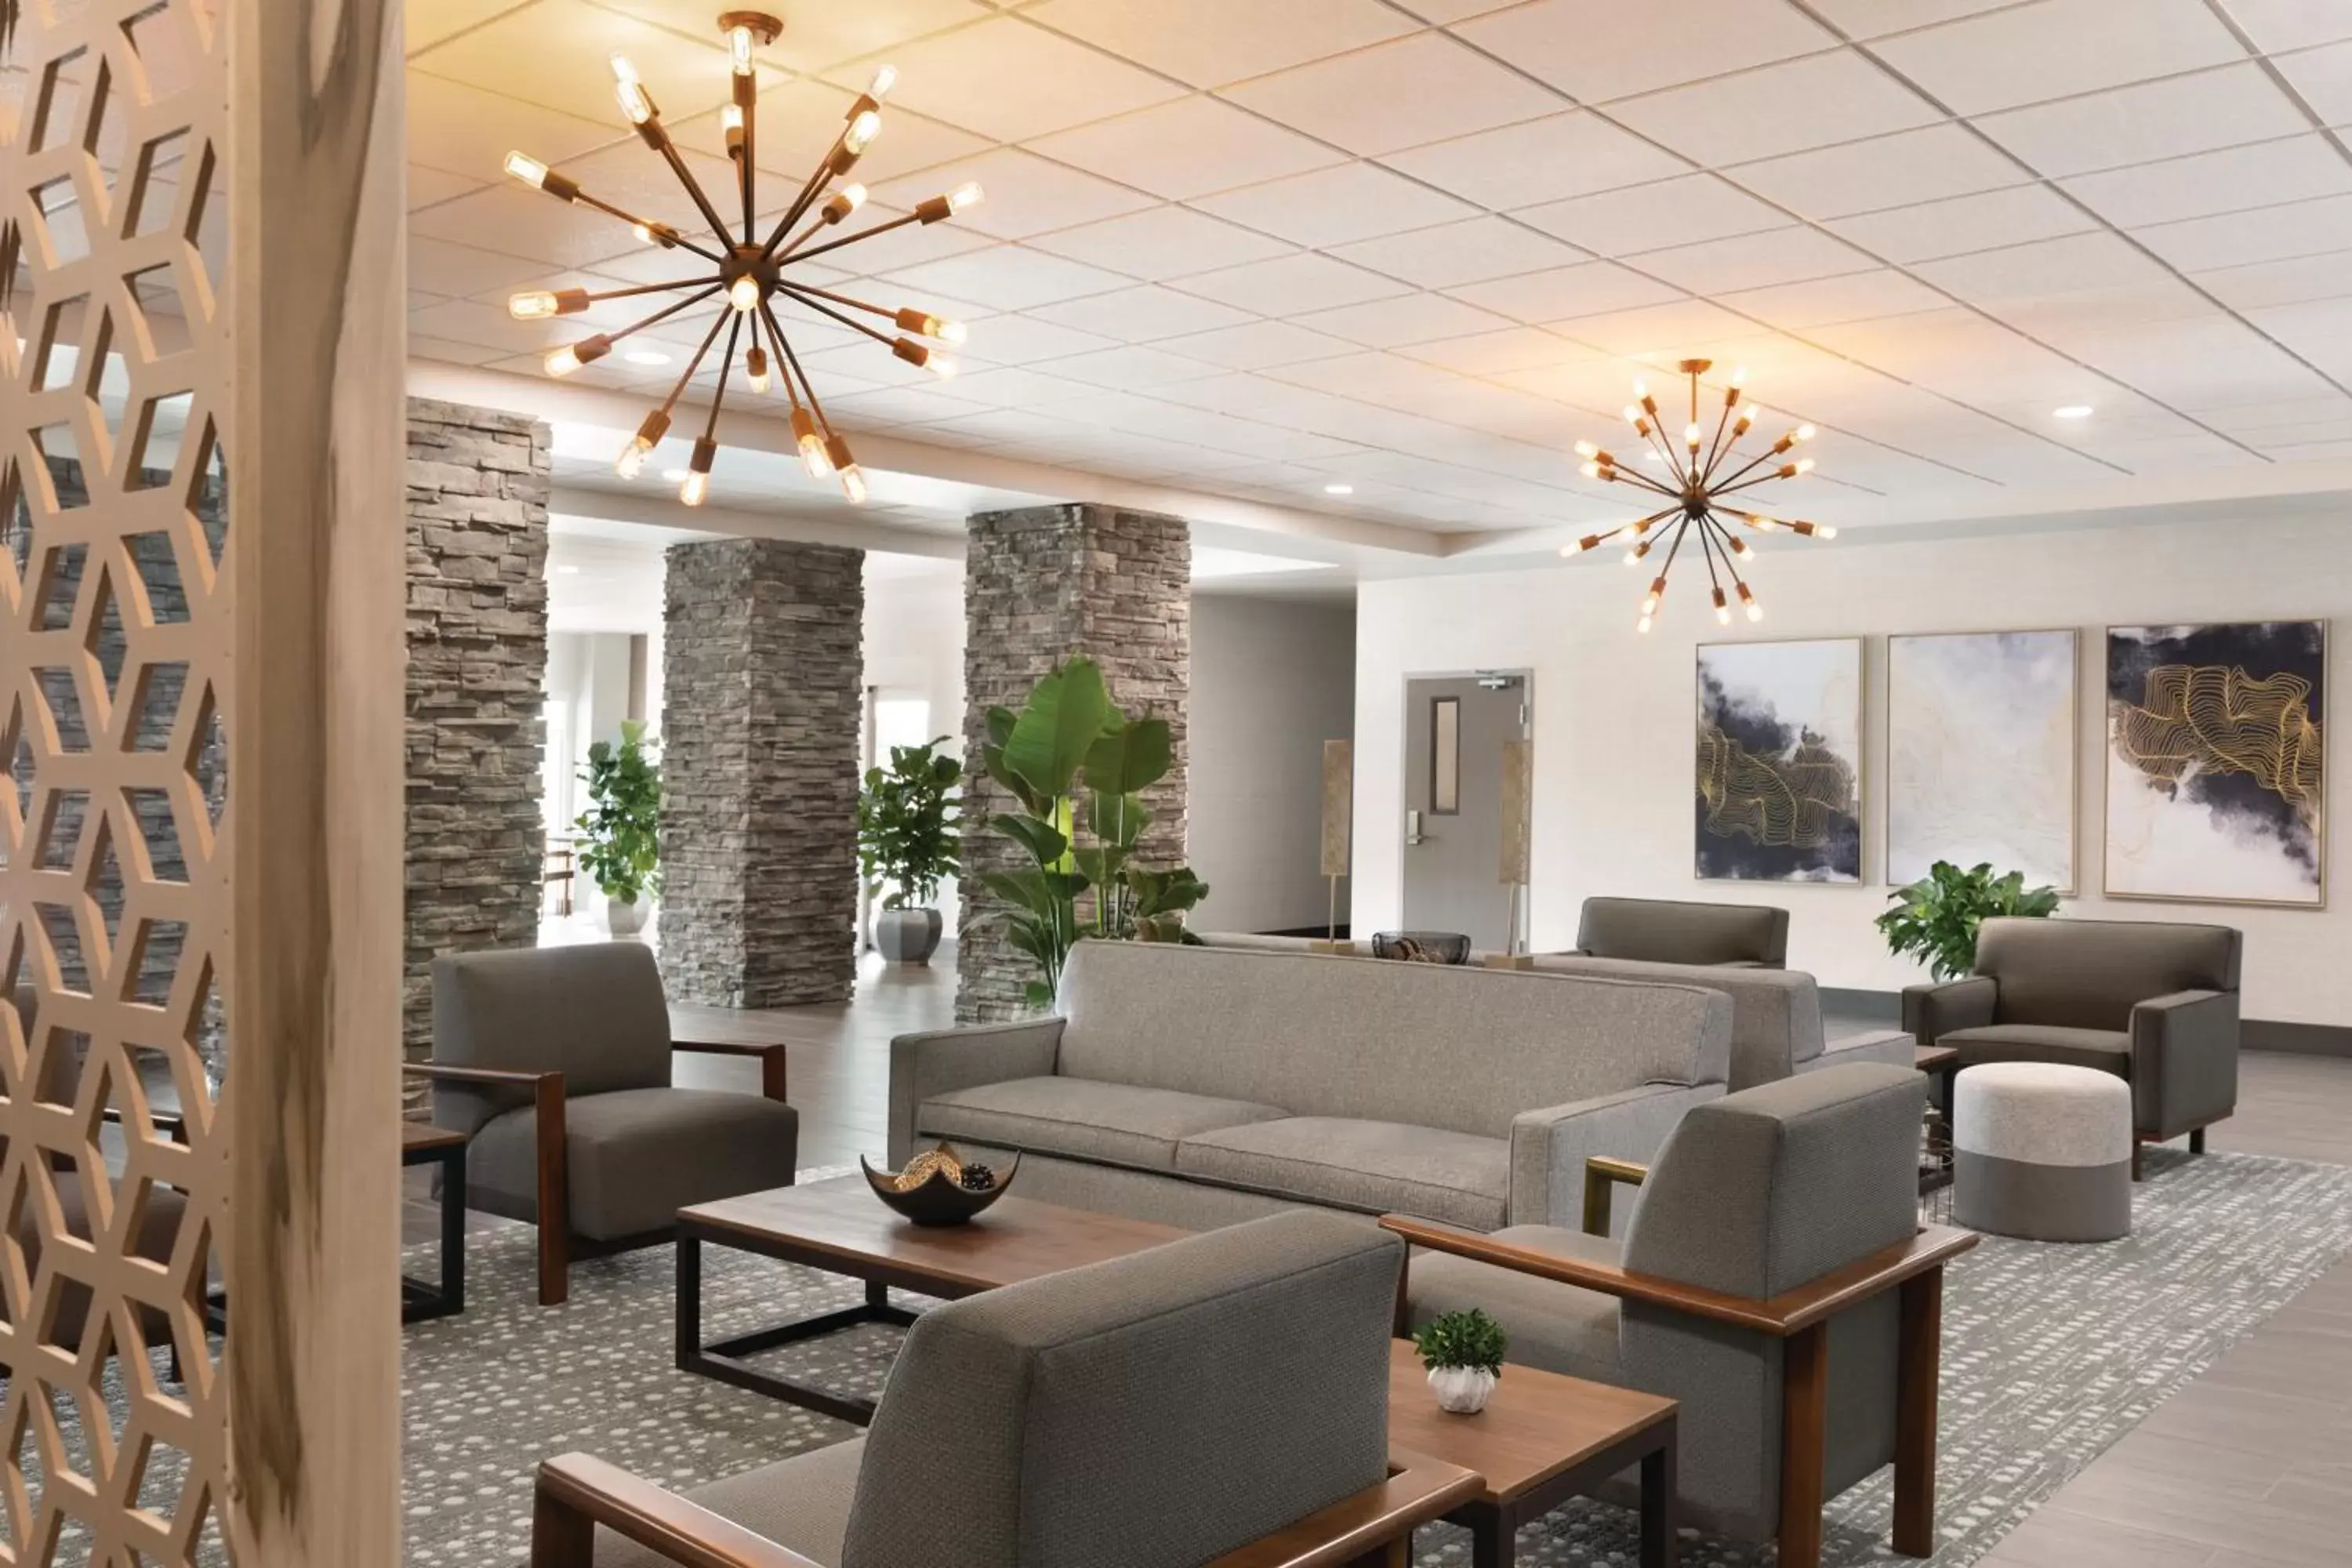 Lobby or reception, Lobby/Reception in Radisson Hotel Oklahoma City Airport